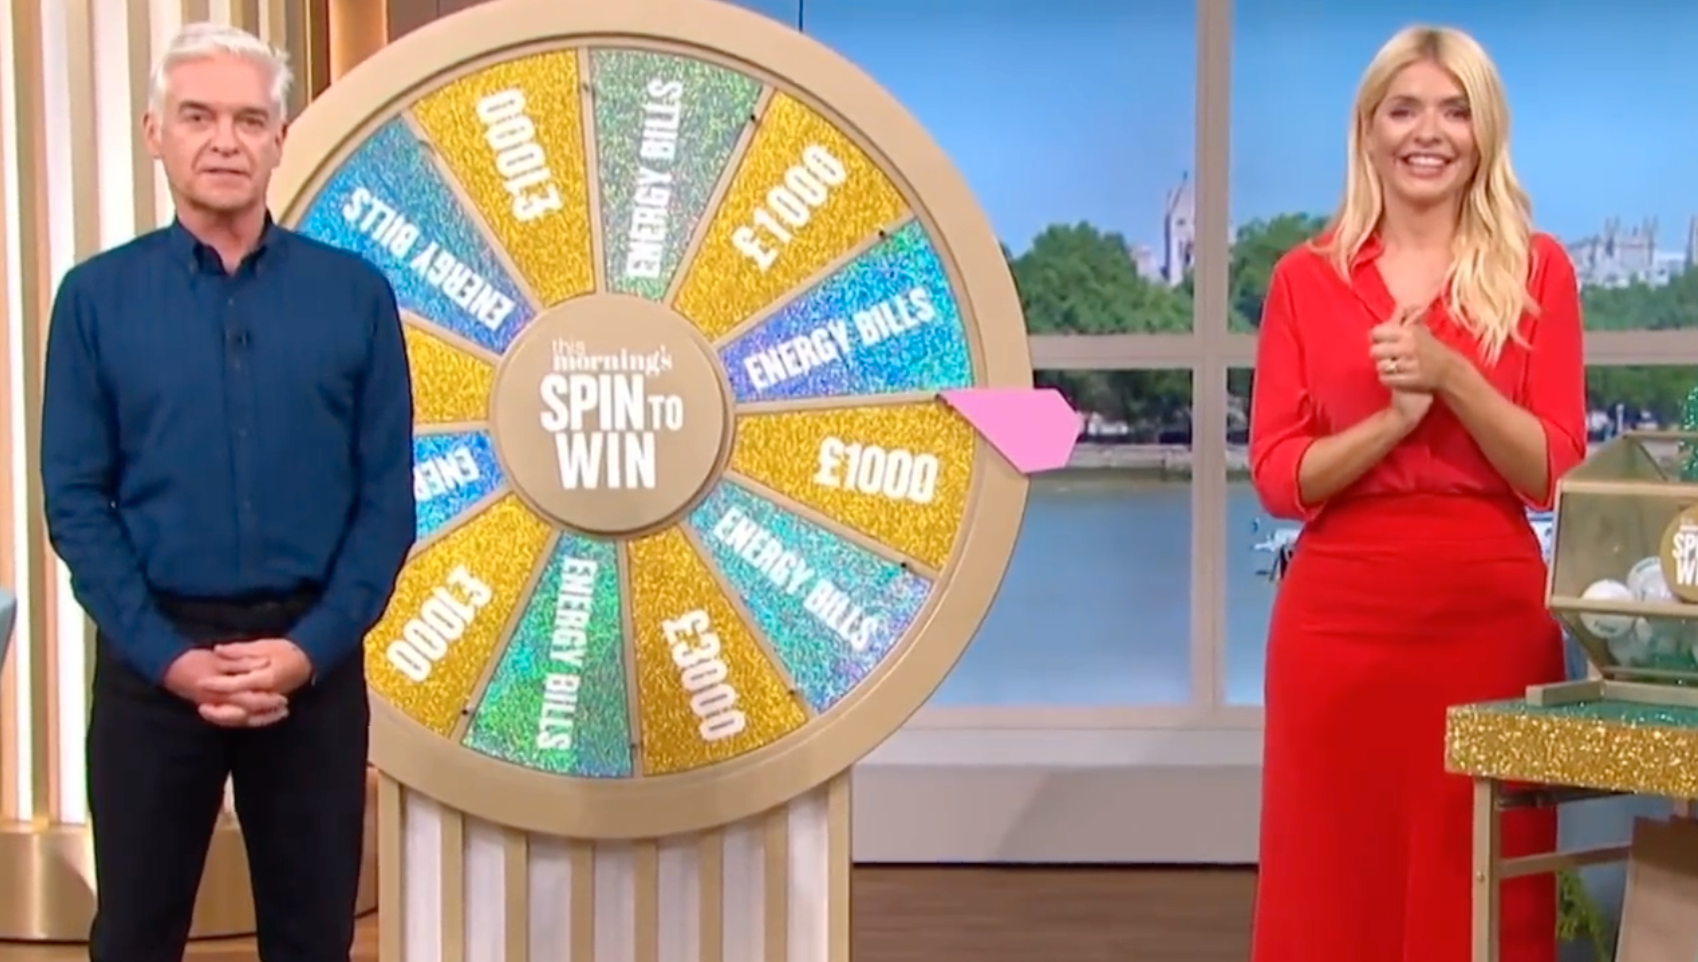 ”Spin to win” är ett populärt inslag på ITV:s dagliga program ”This morning show”.